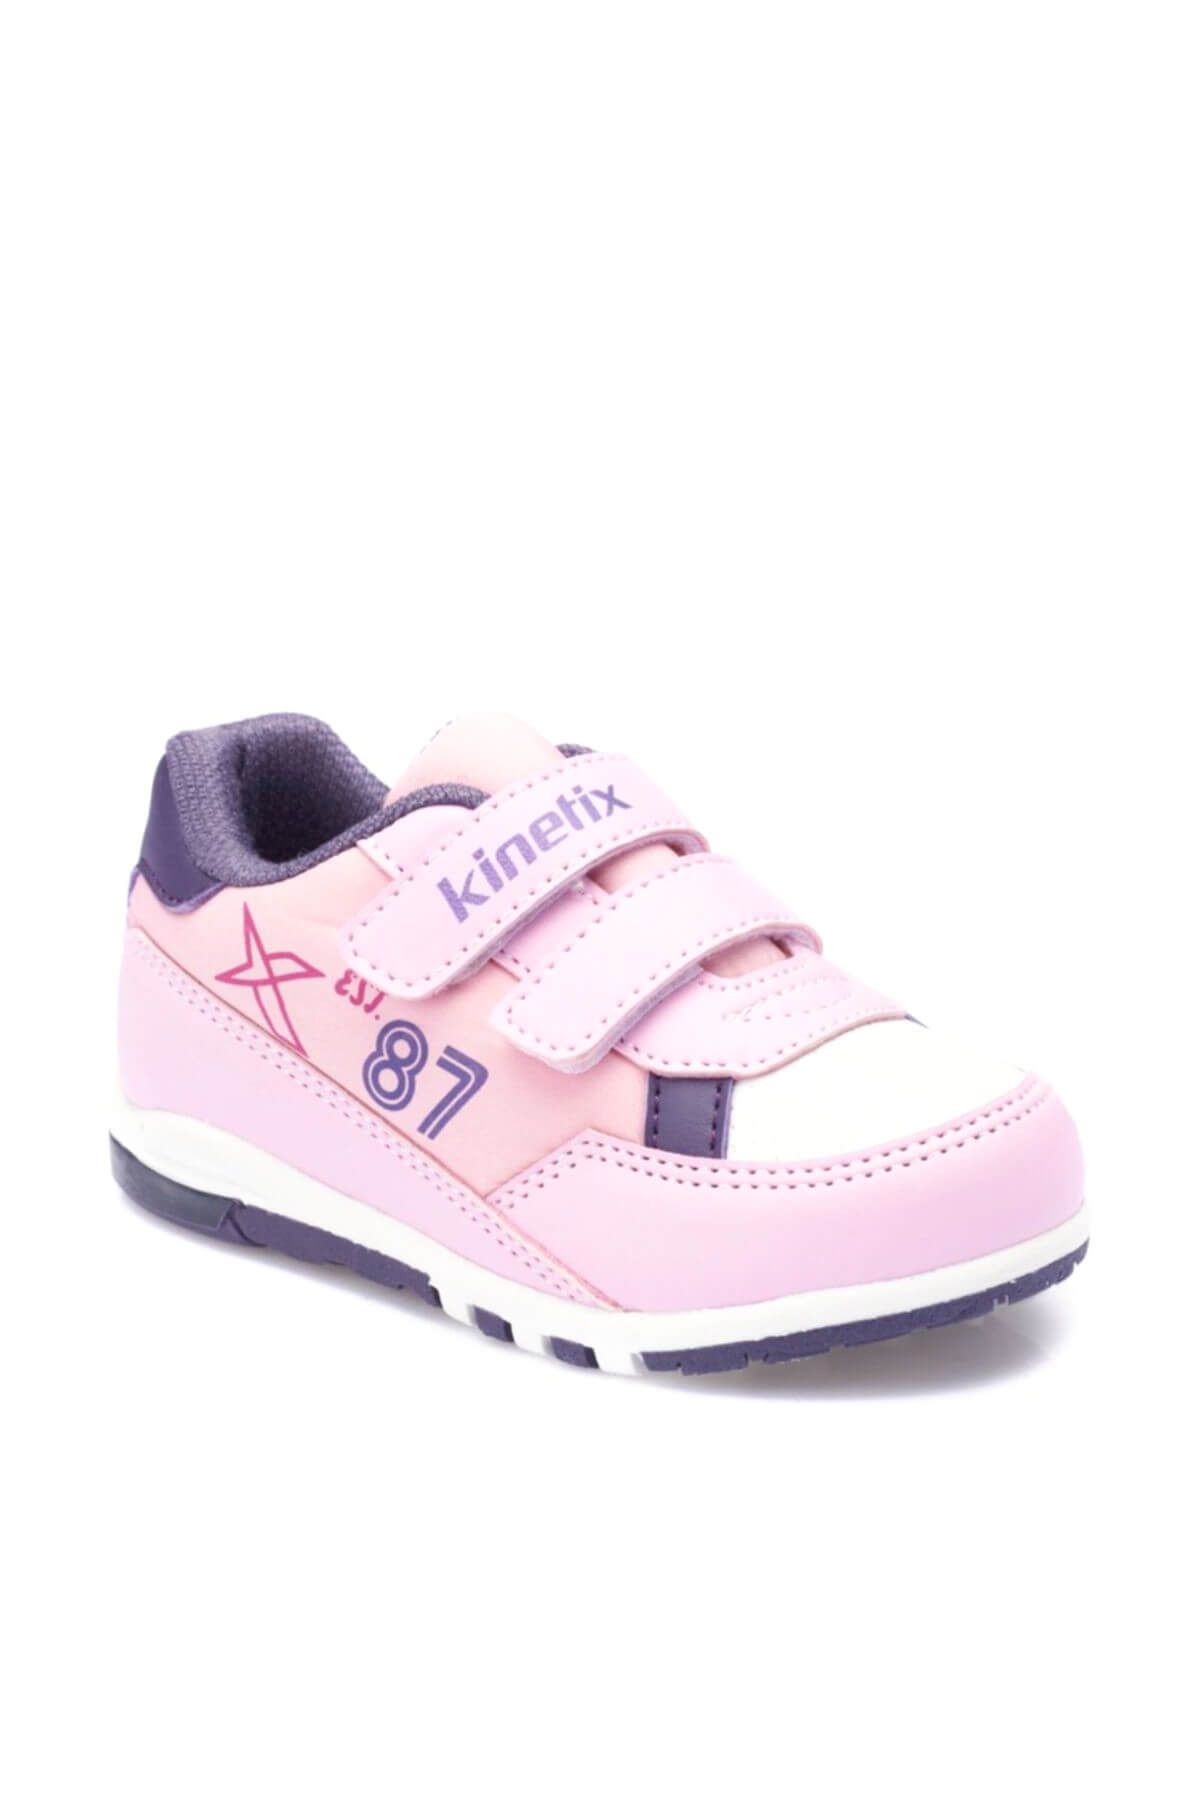 Kinetix Melsi Açık Pembe Mor Kız Çocuk Sneaker Ayakkabı 100325659